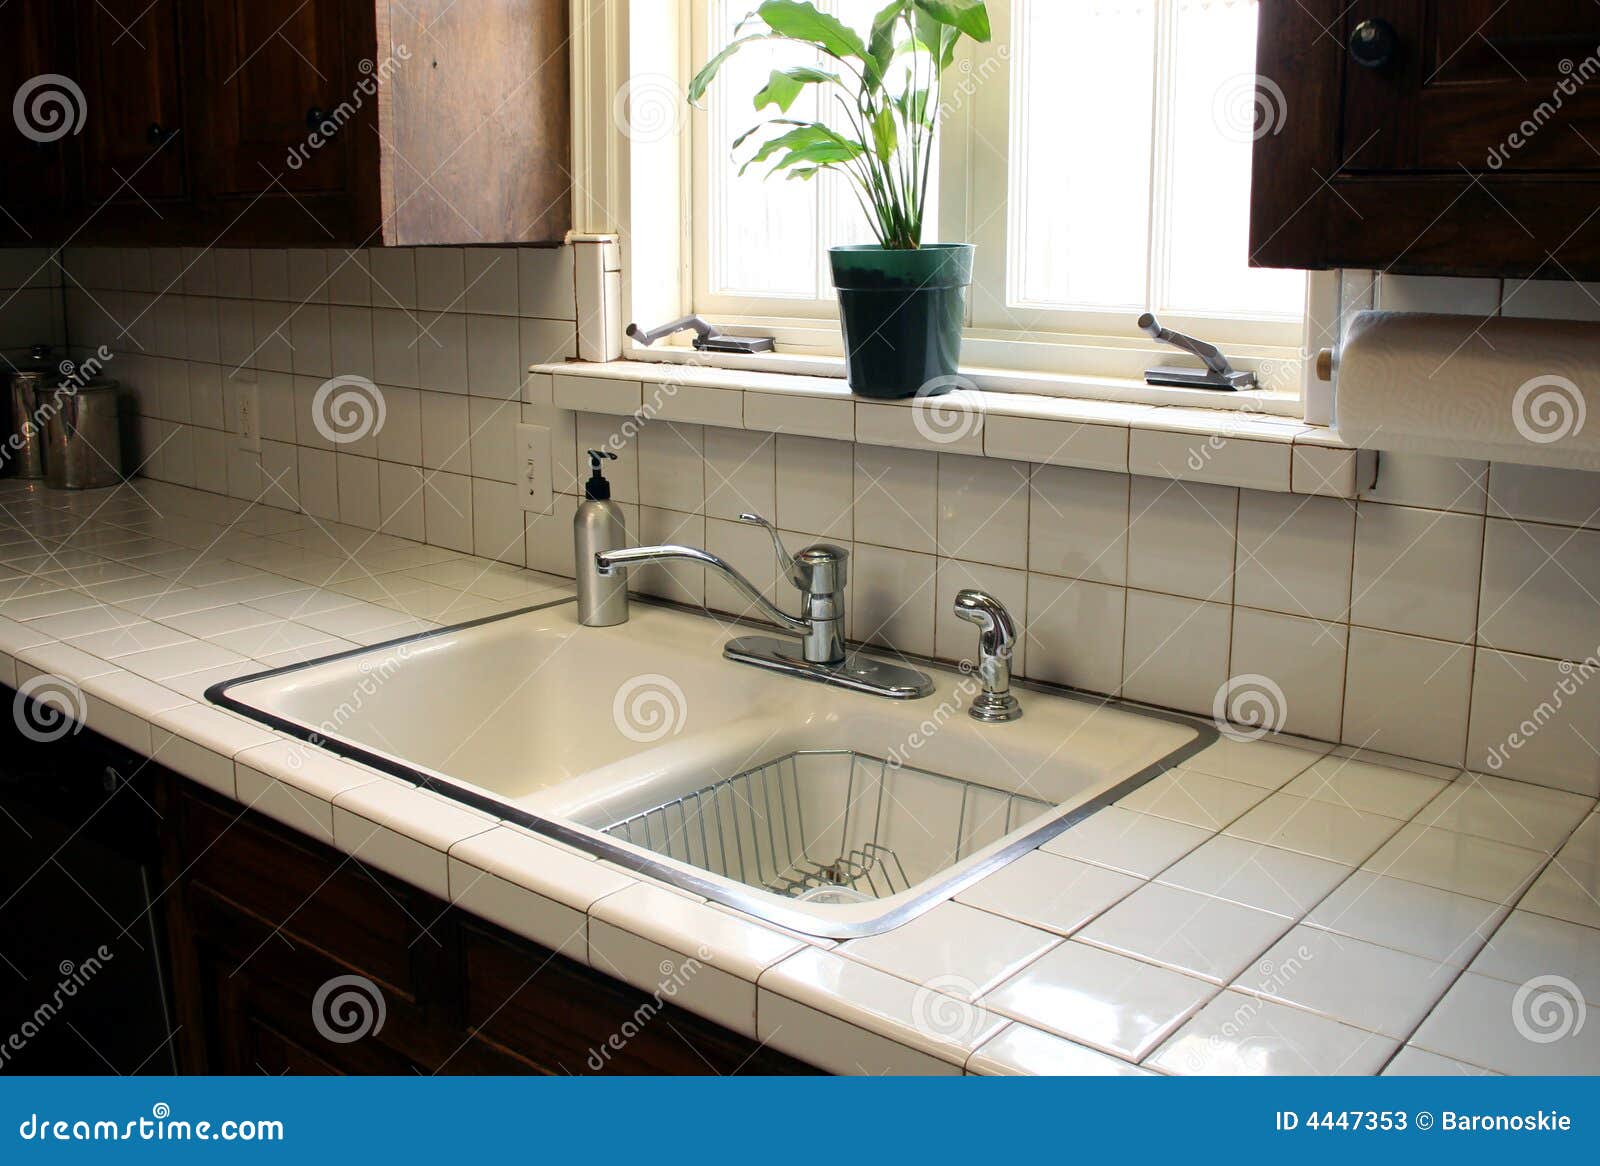 kitchen sink 2